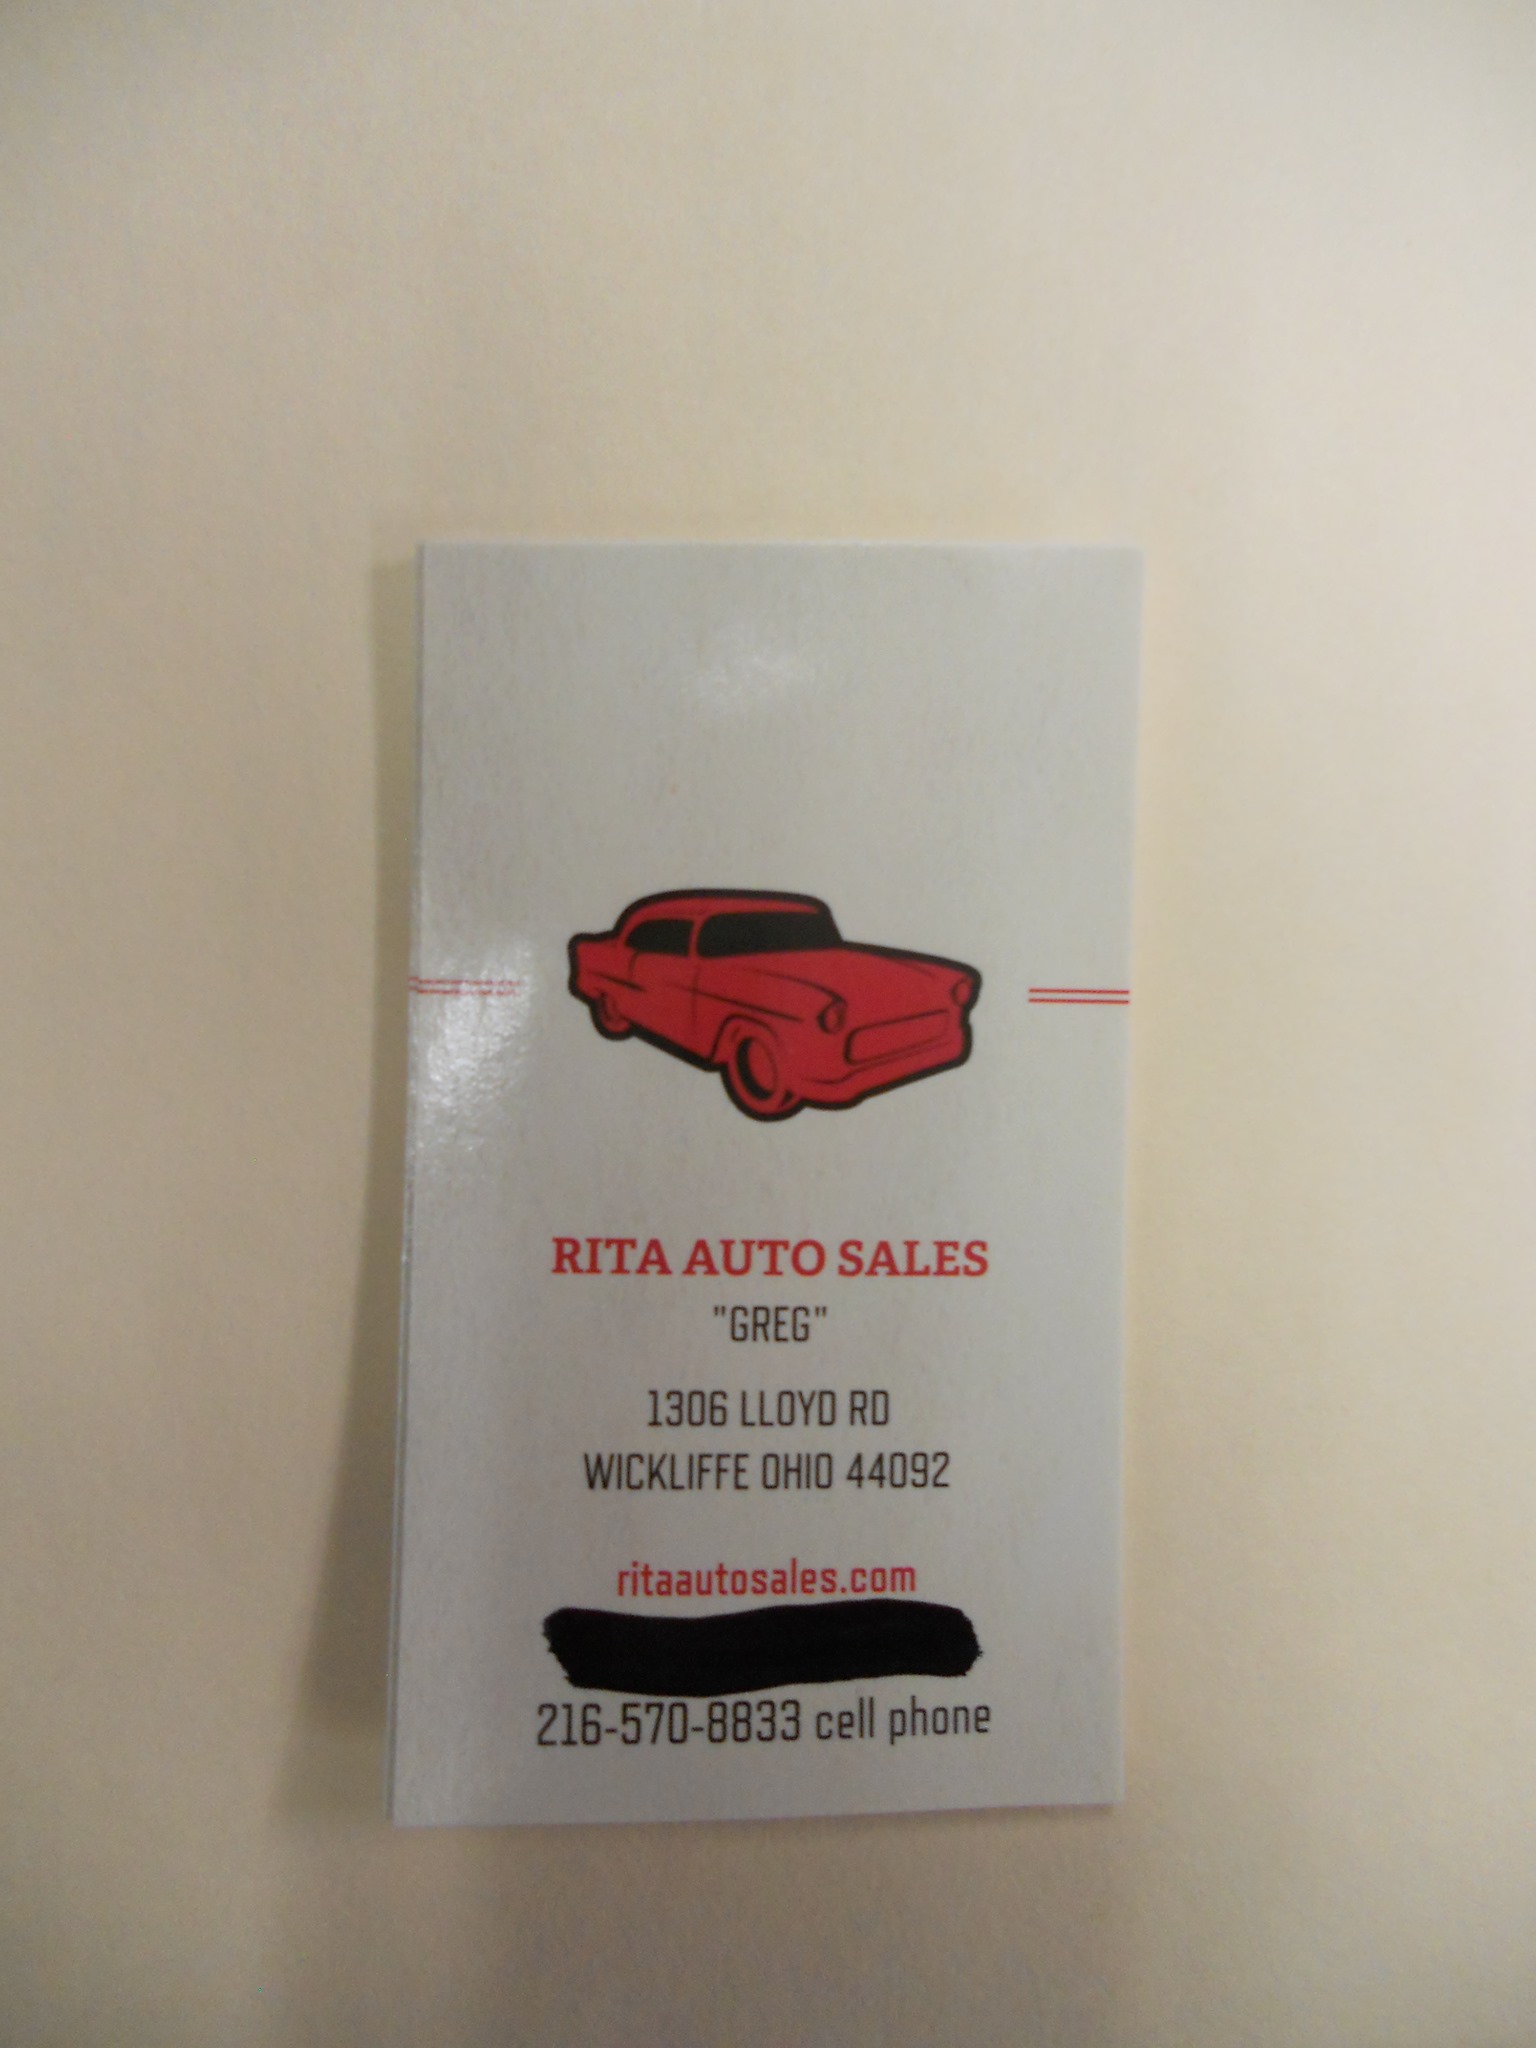 Rita Auto Sales